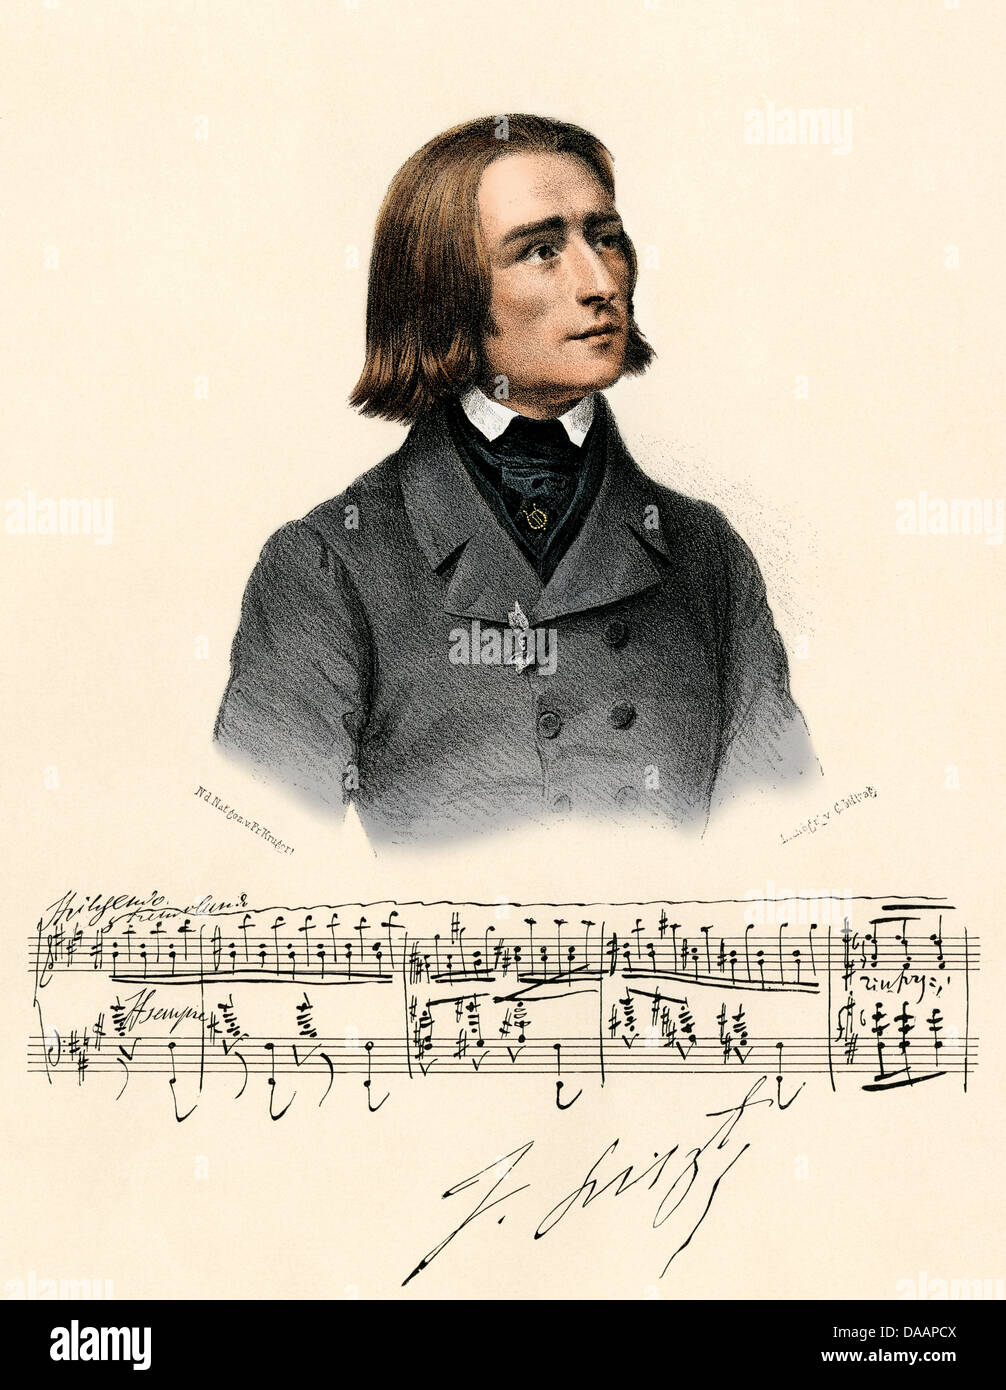 Porträt des jungen Franz Liszt, mit einem Schrott von Manuskript und sein Autogramm. Digital farbige Lithographie Stockfoto